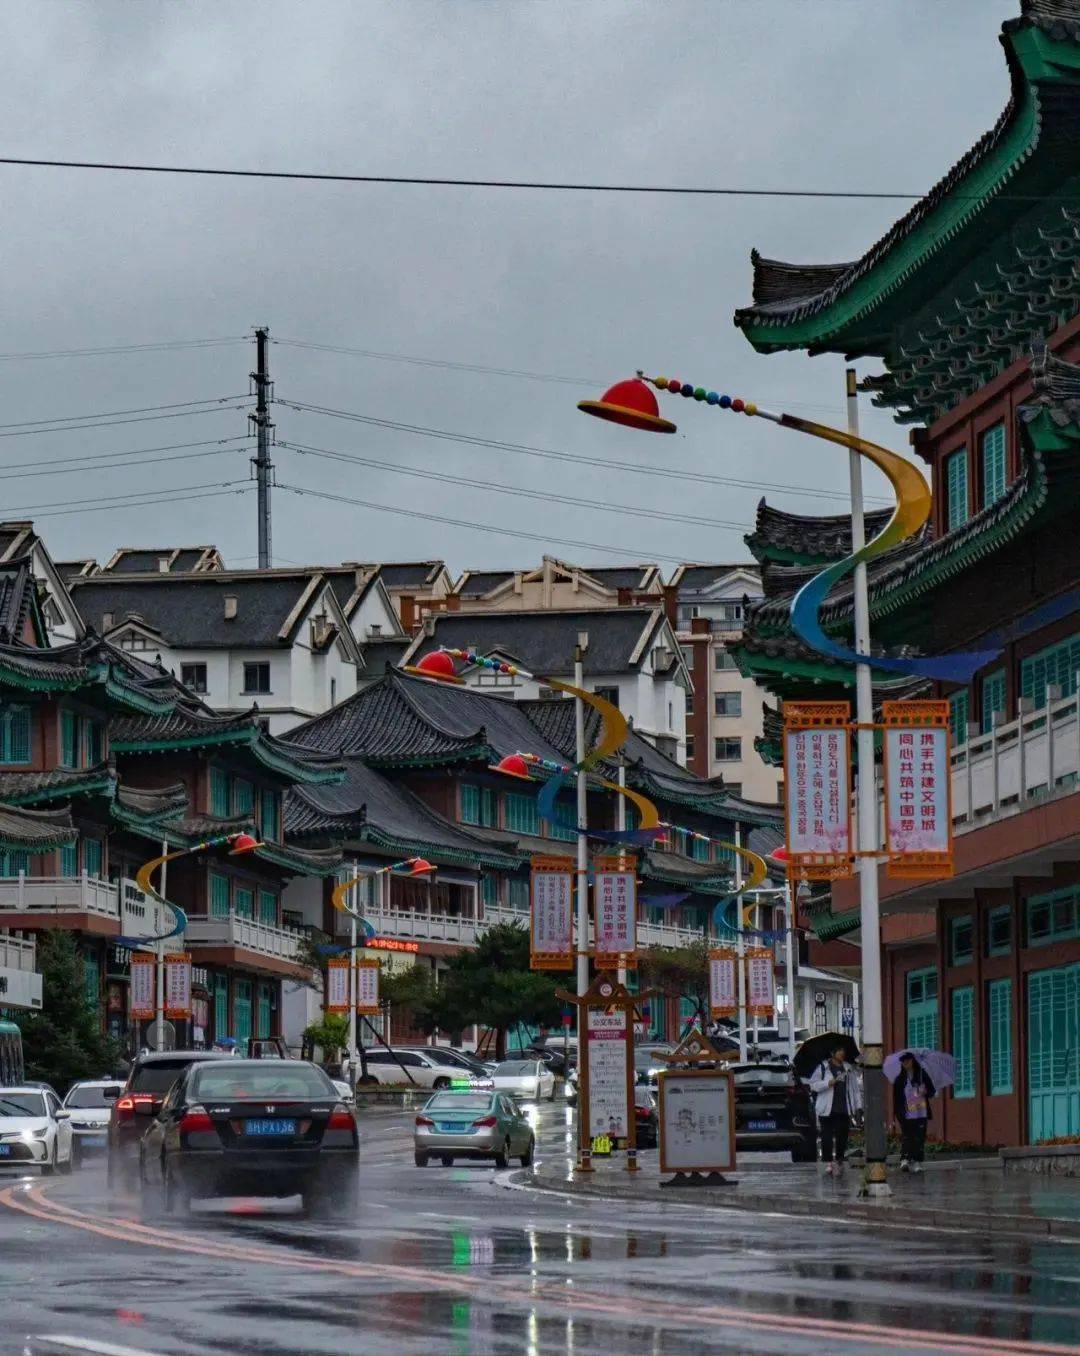 延吉旅游的头牌,是帽儿山下的中国朝鲜族民俗村